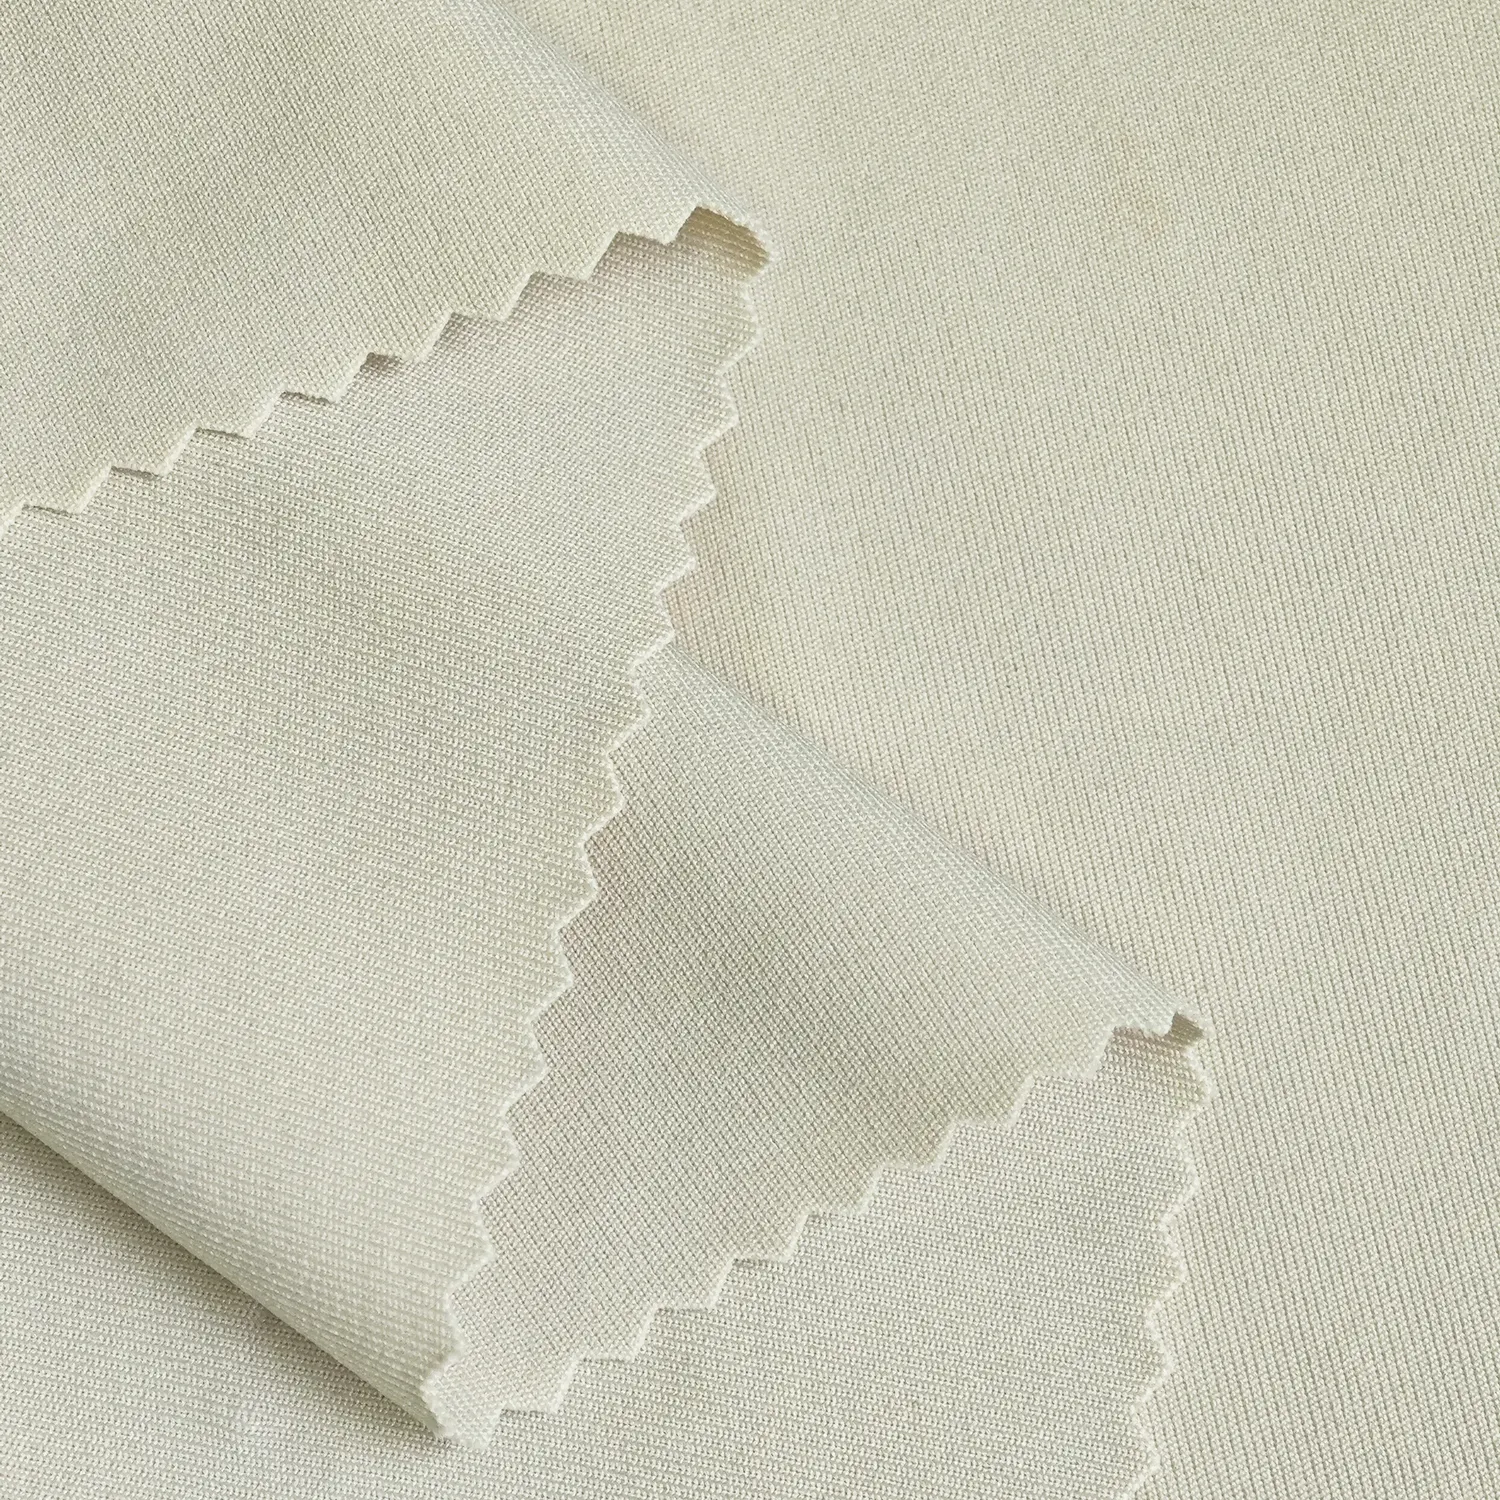 Yüksek kaliteli esneklik 4 yönlü streç 90% Polyester 10% Spandex örme interlok tüplü için venedik kumaş takım pantolon